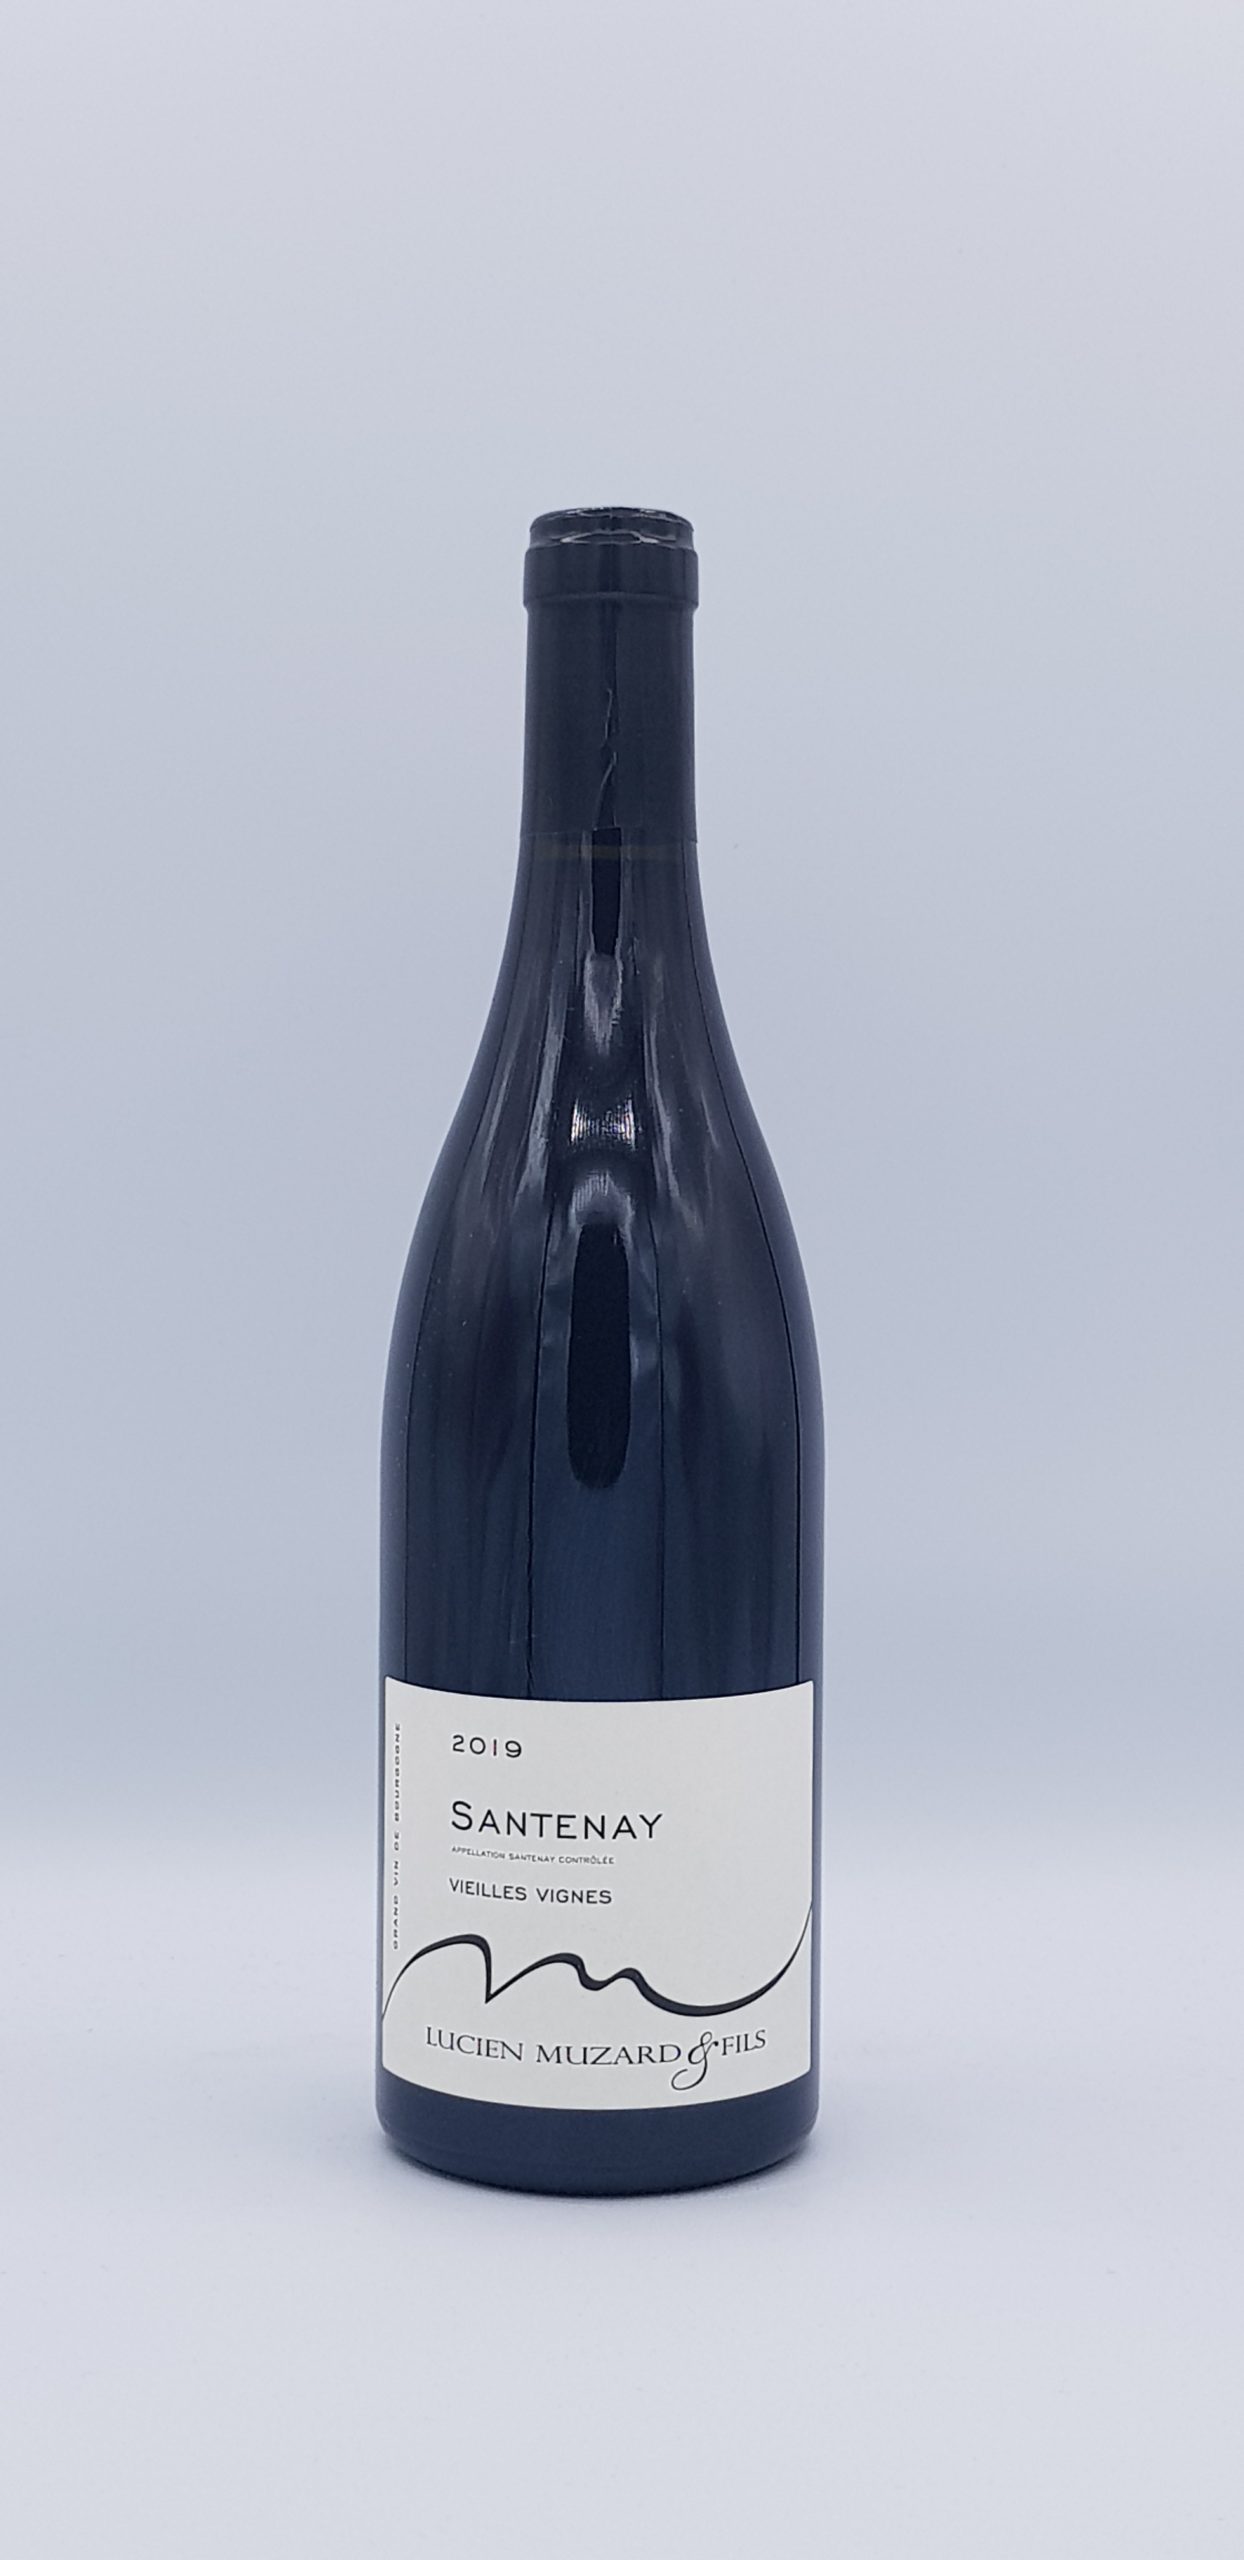 Santenay “Vieilles Vignes” 2019 Rouge